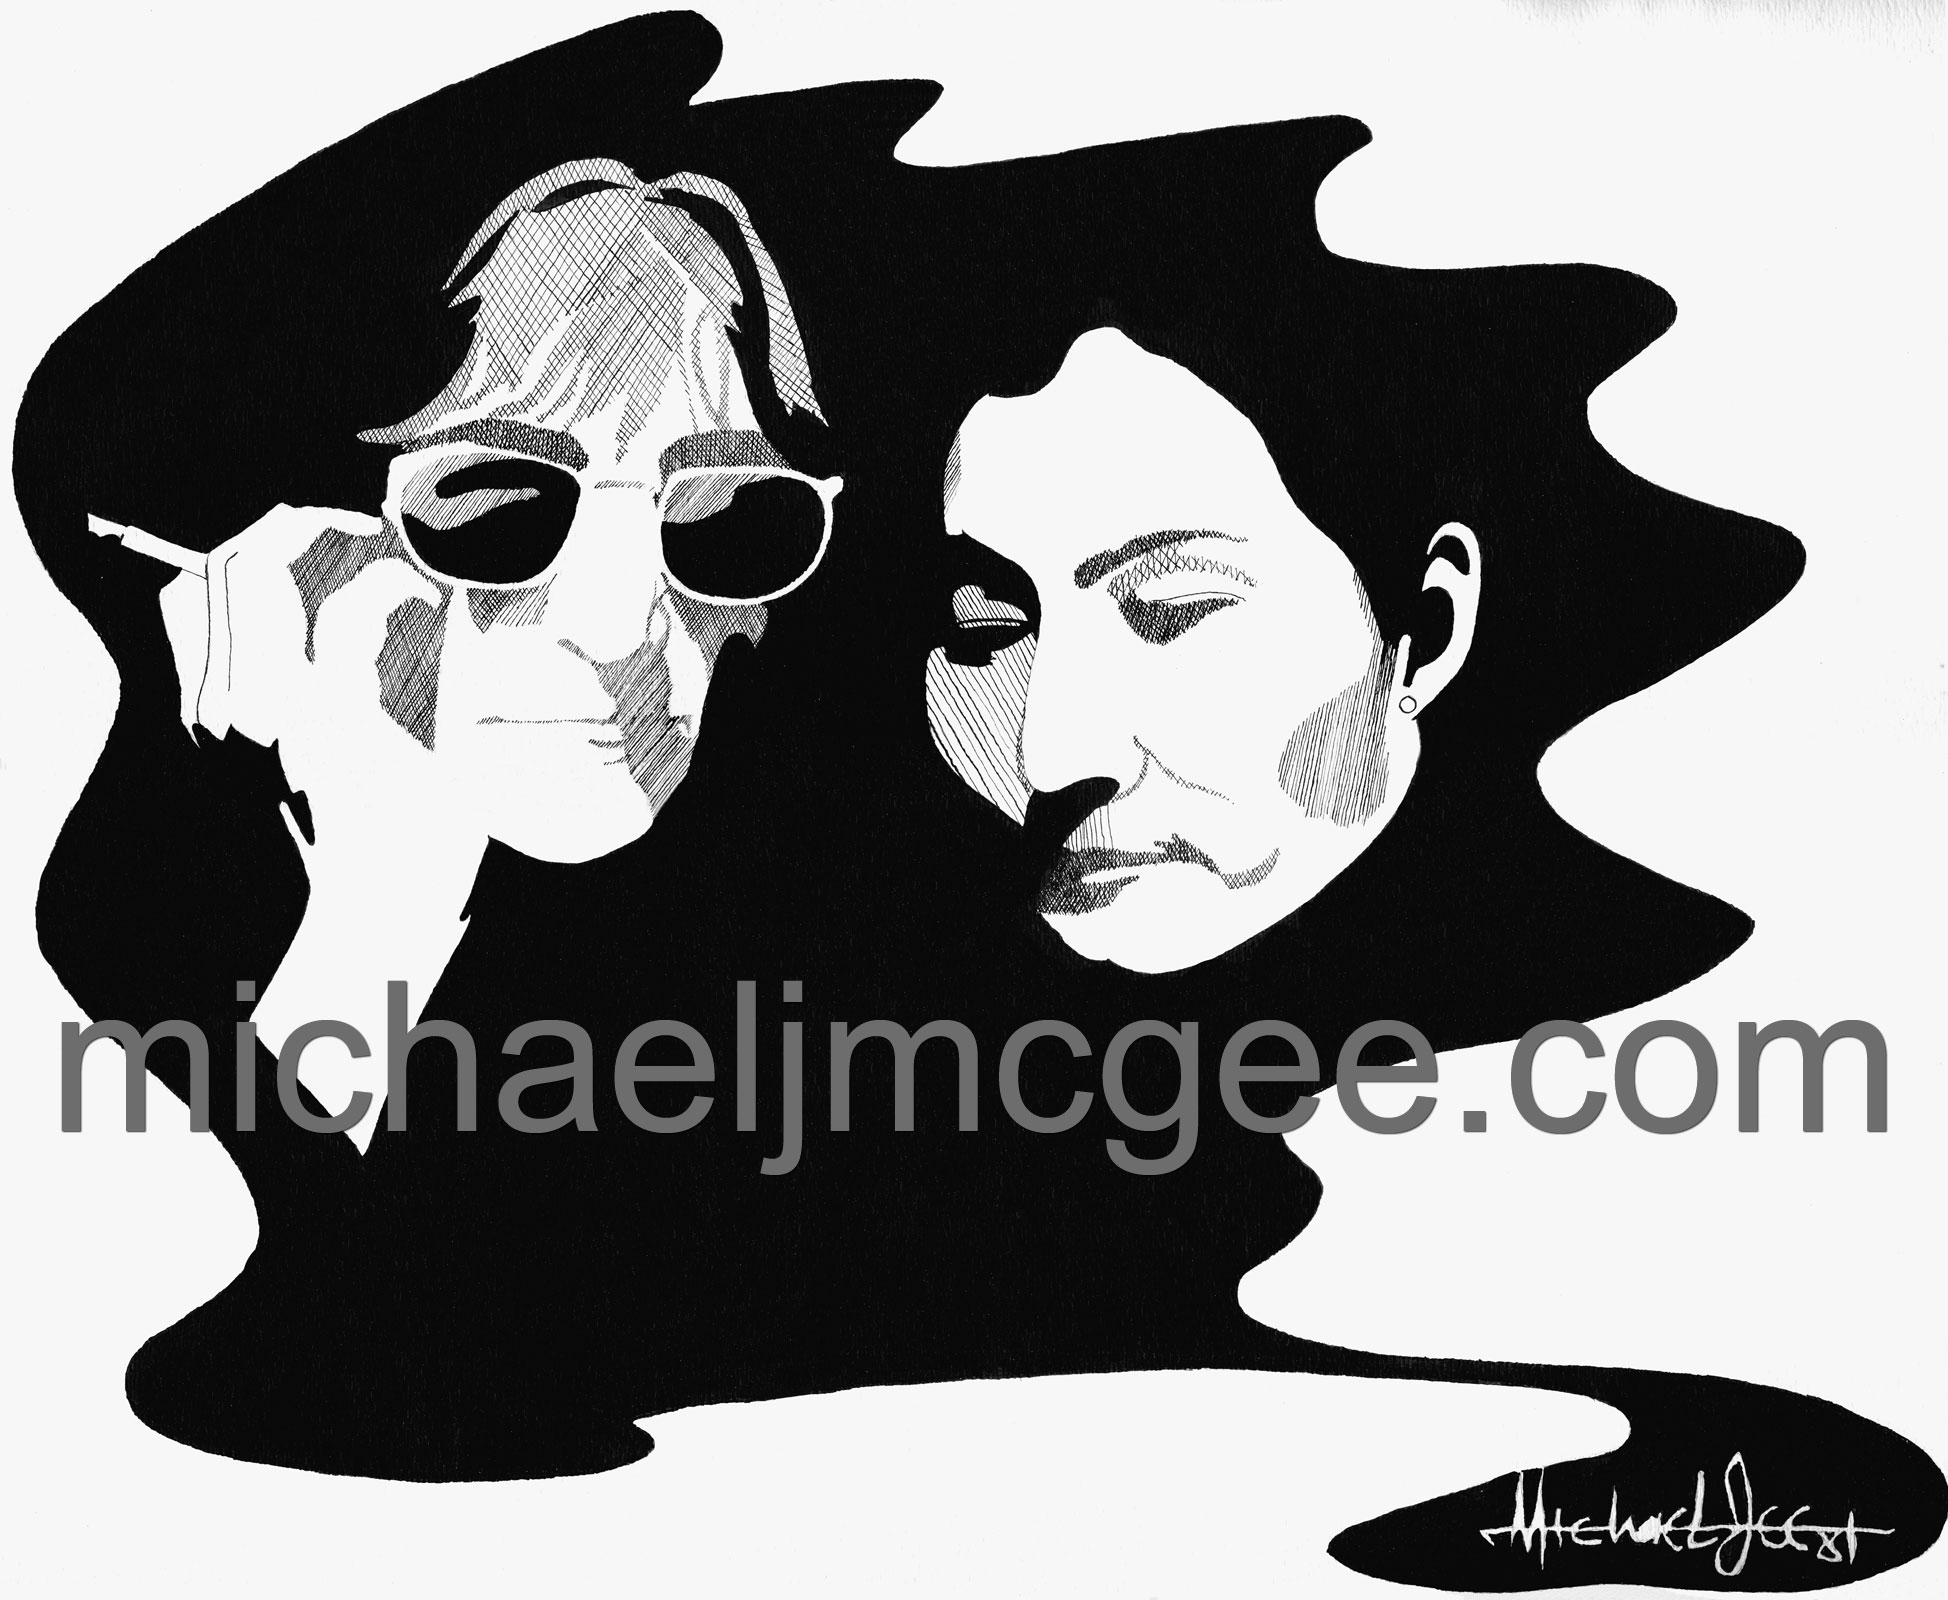 John Lennon & Yoko Ono / MJM Artworks / michaeljmcgee.com